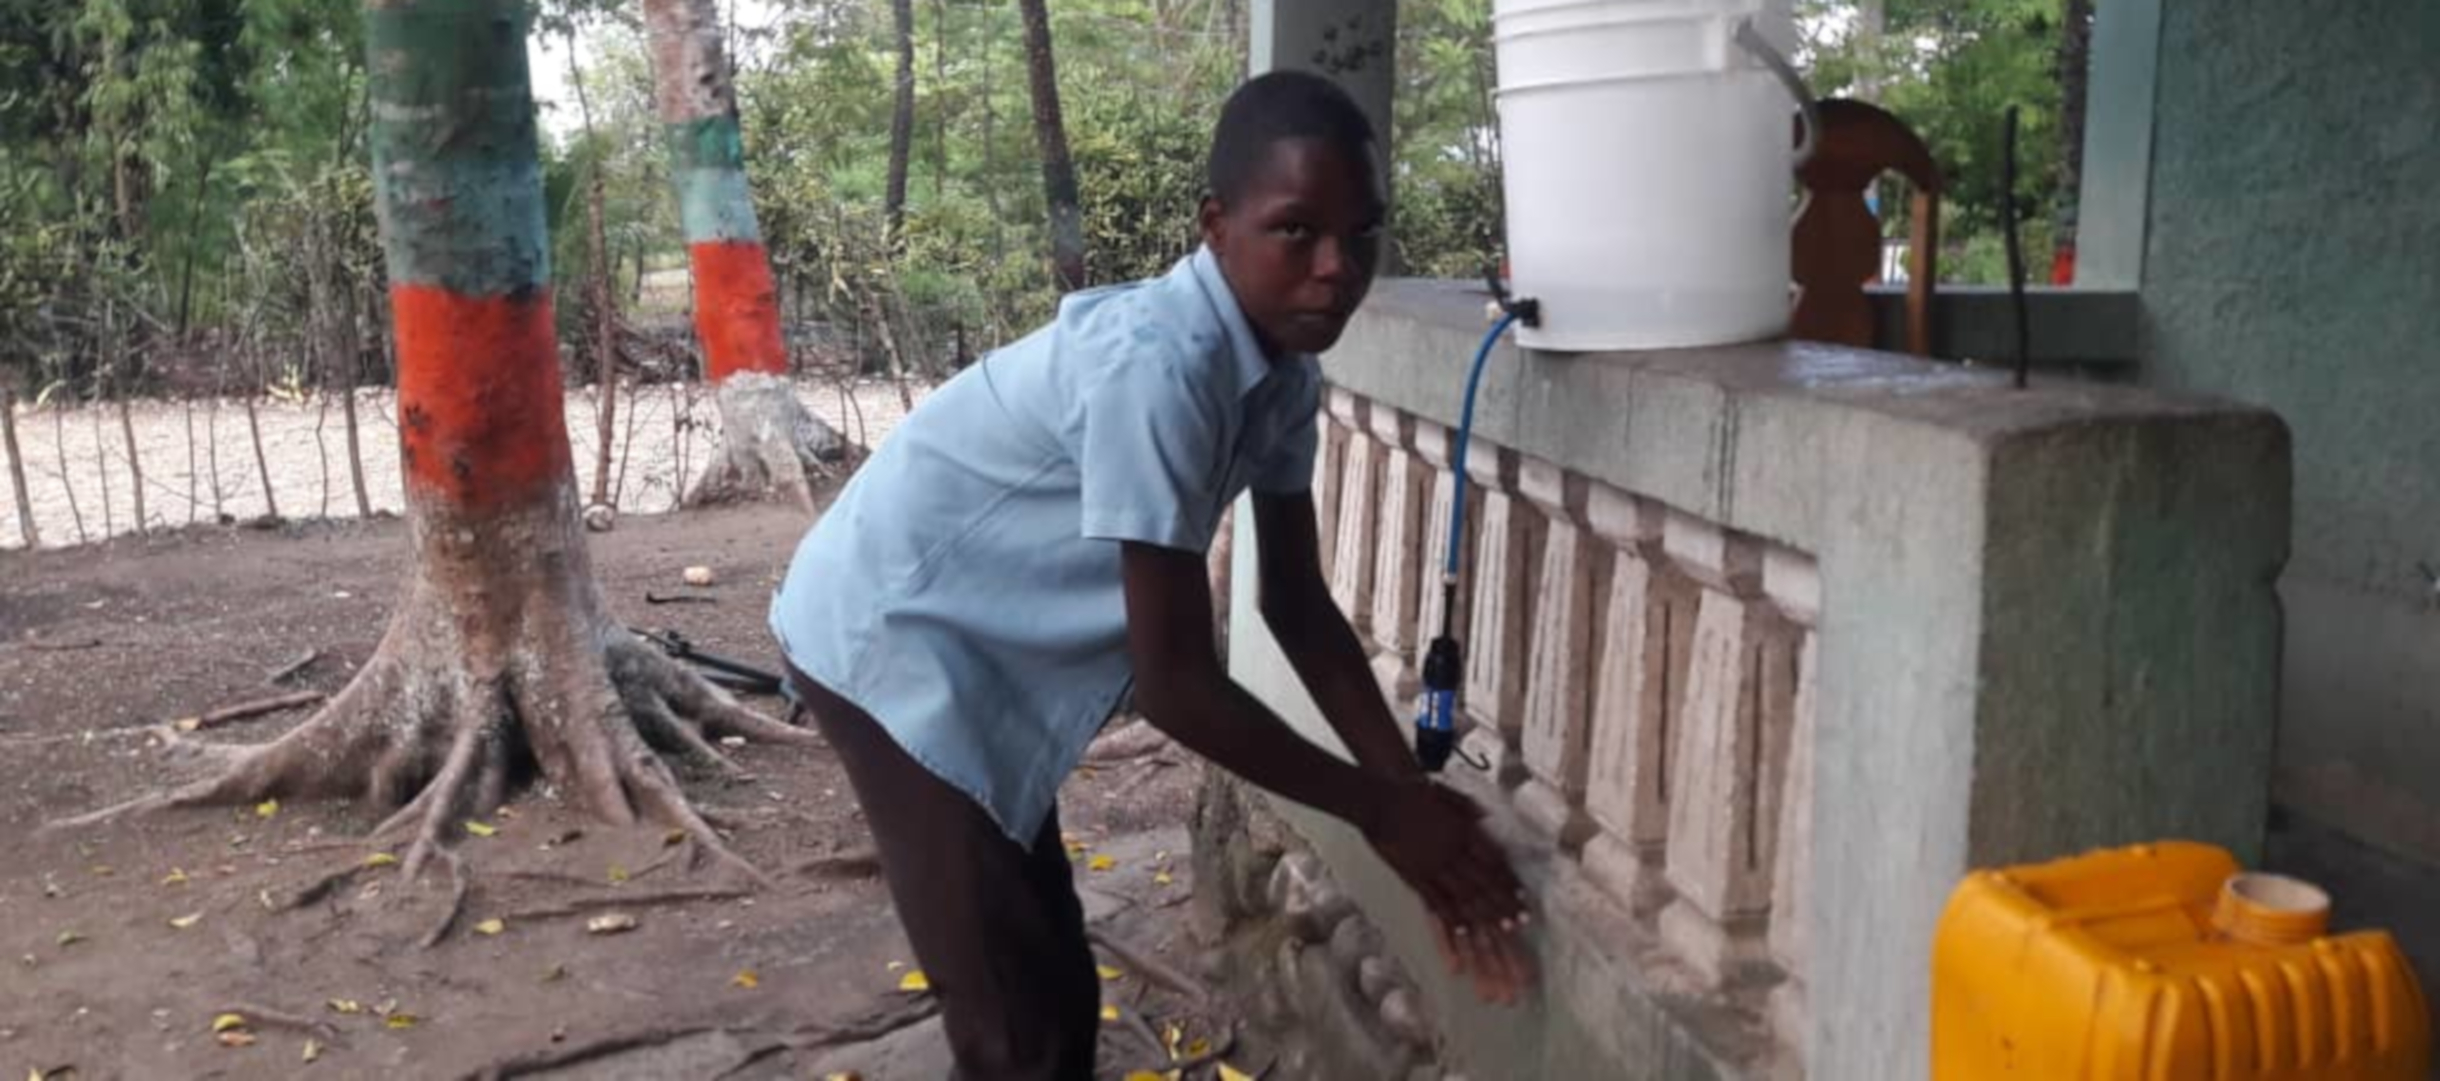 Patenkind aus Haiti wäscht sich die Hände.